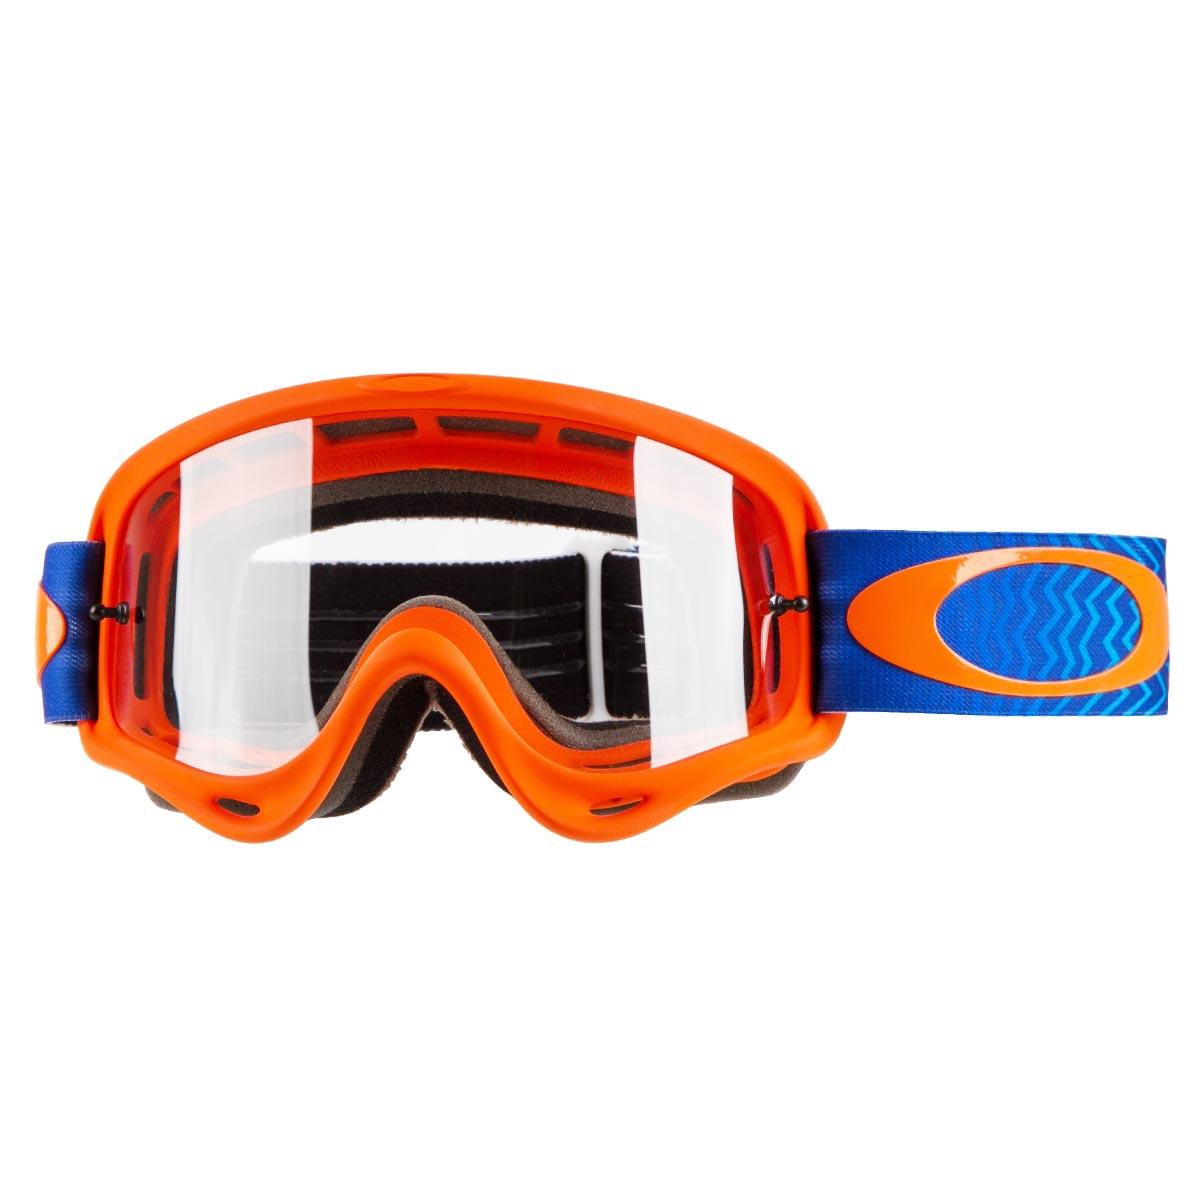 Oakley Masque O Frame MX Shockwave Orange/Blue - Clear Anti-Fog